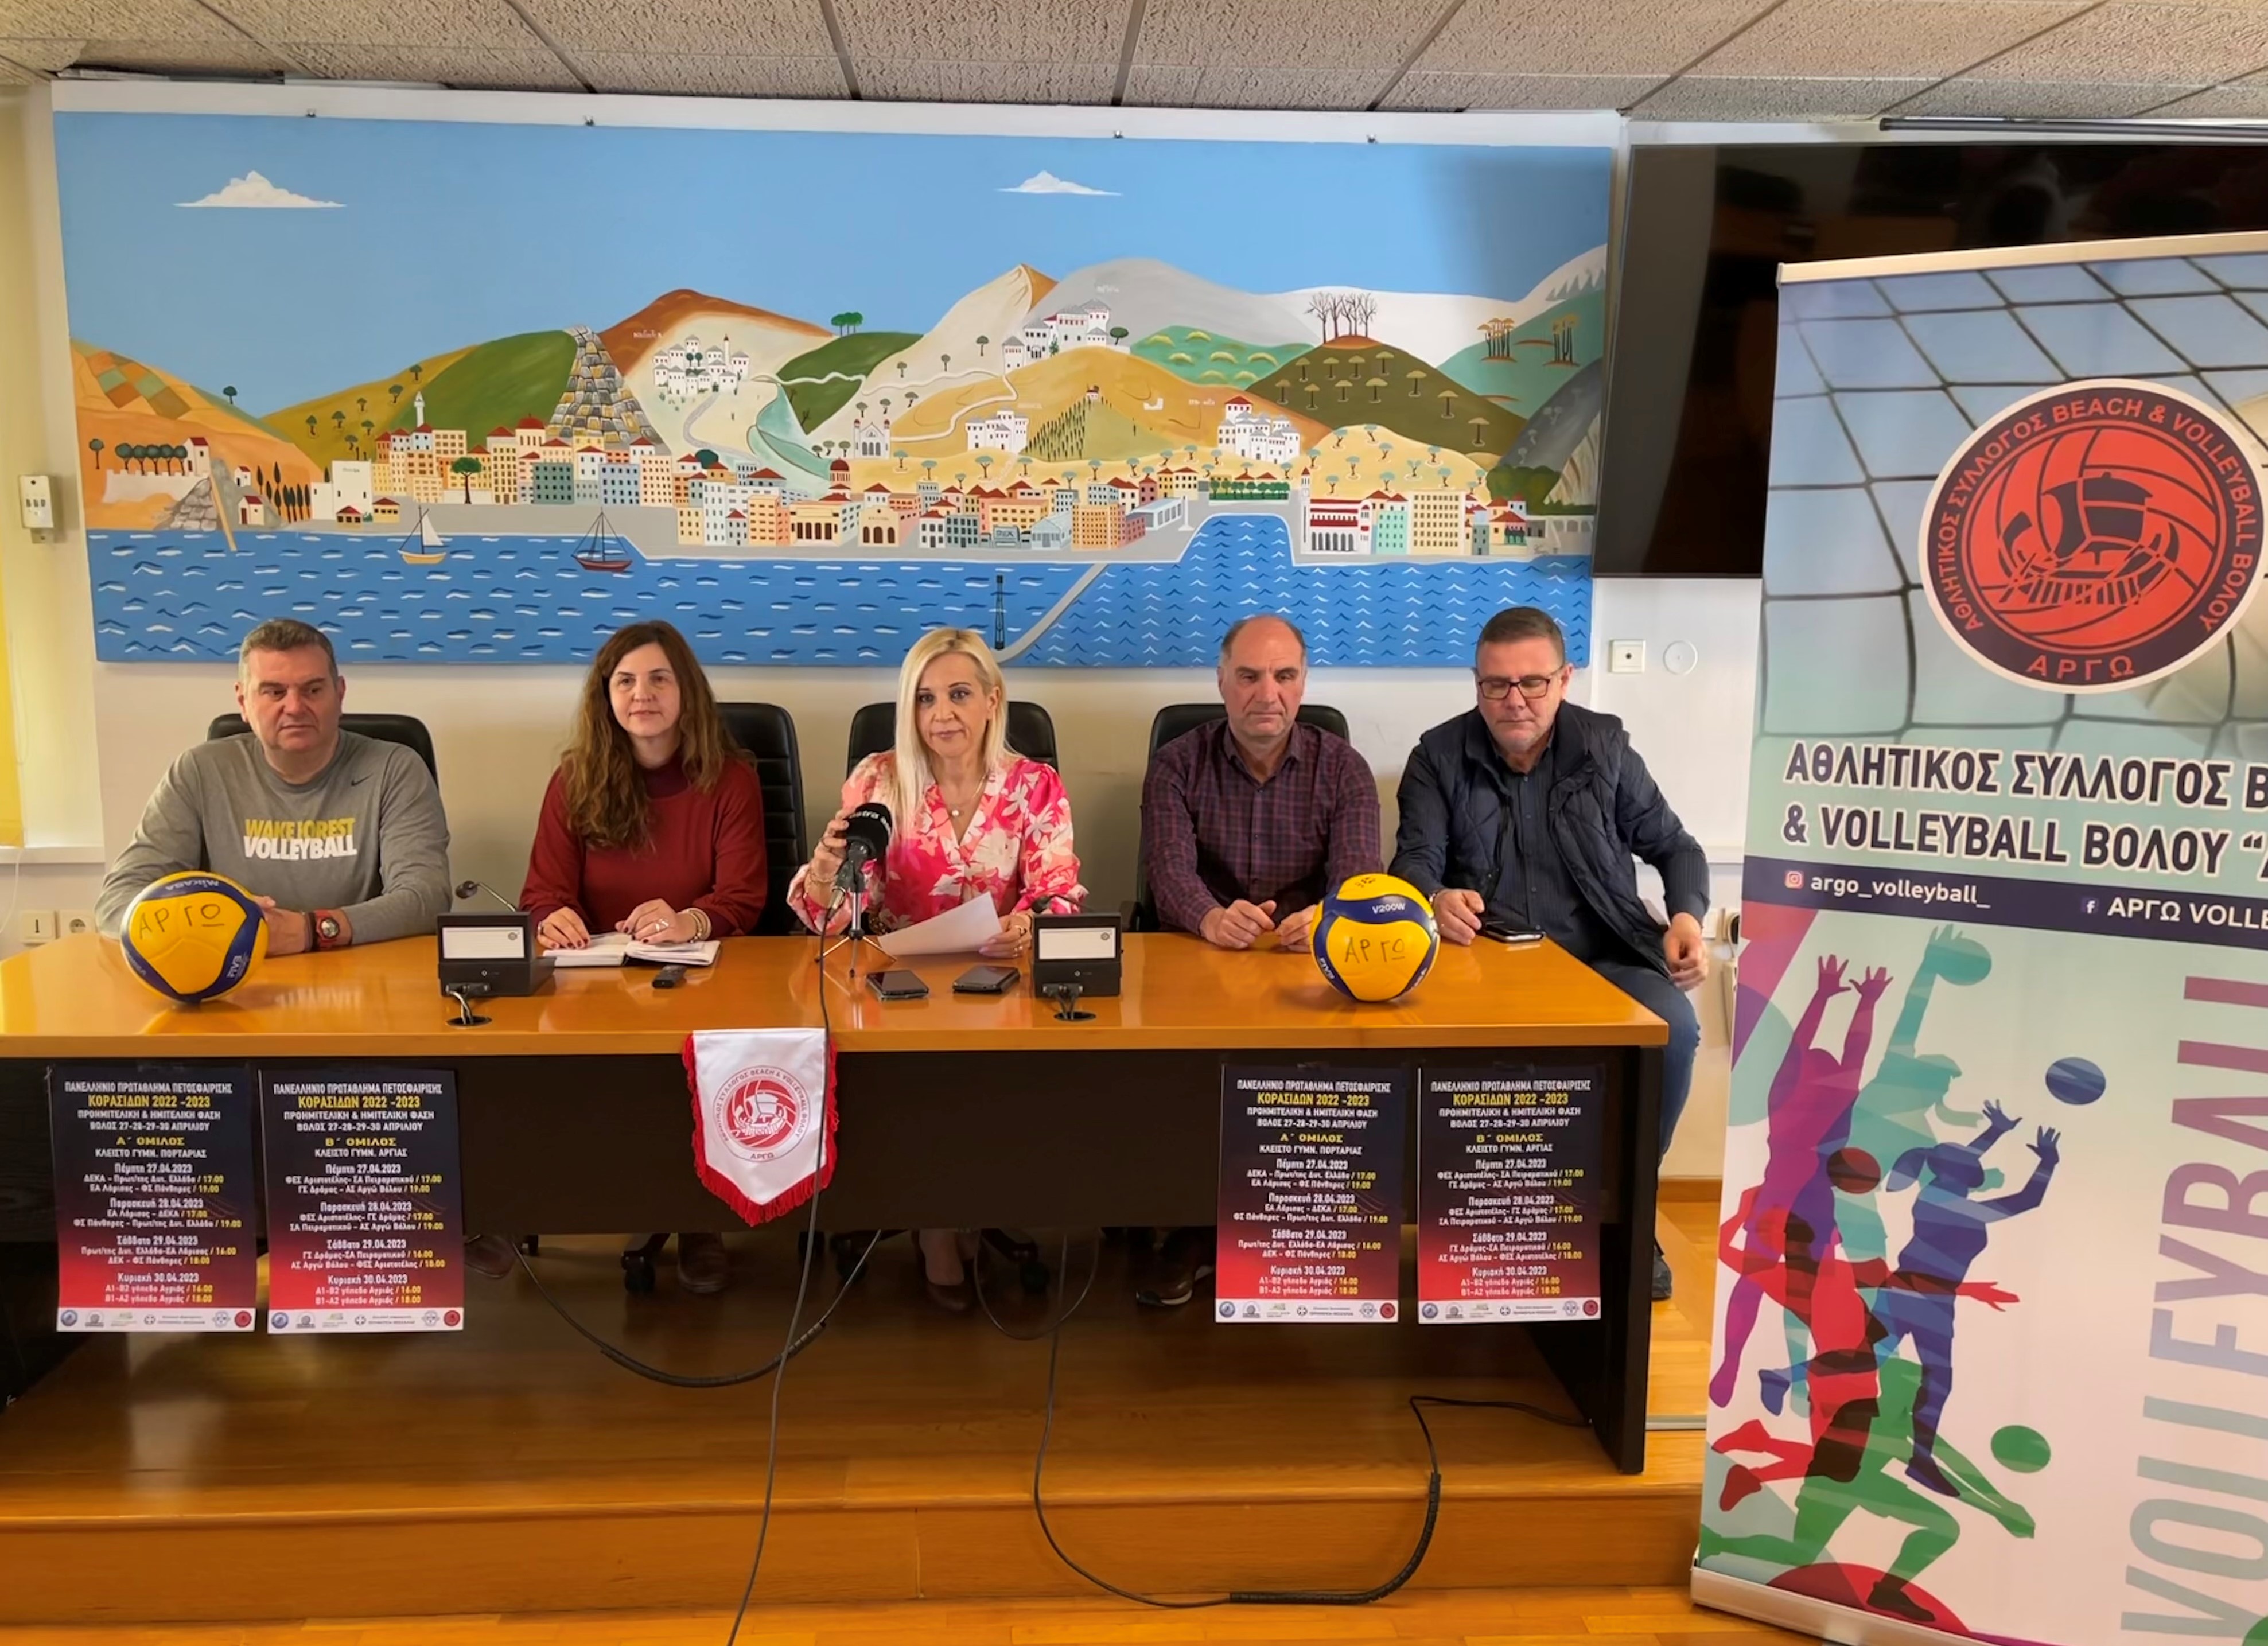 Ξεκινά στο Βόλο το Πανελλήνιο Πρωτάθλημα Πετοσφαίρισης Κορασίδων με την  υποστήριξη της Περιφέρειας Θεσσαλίας